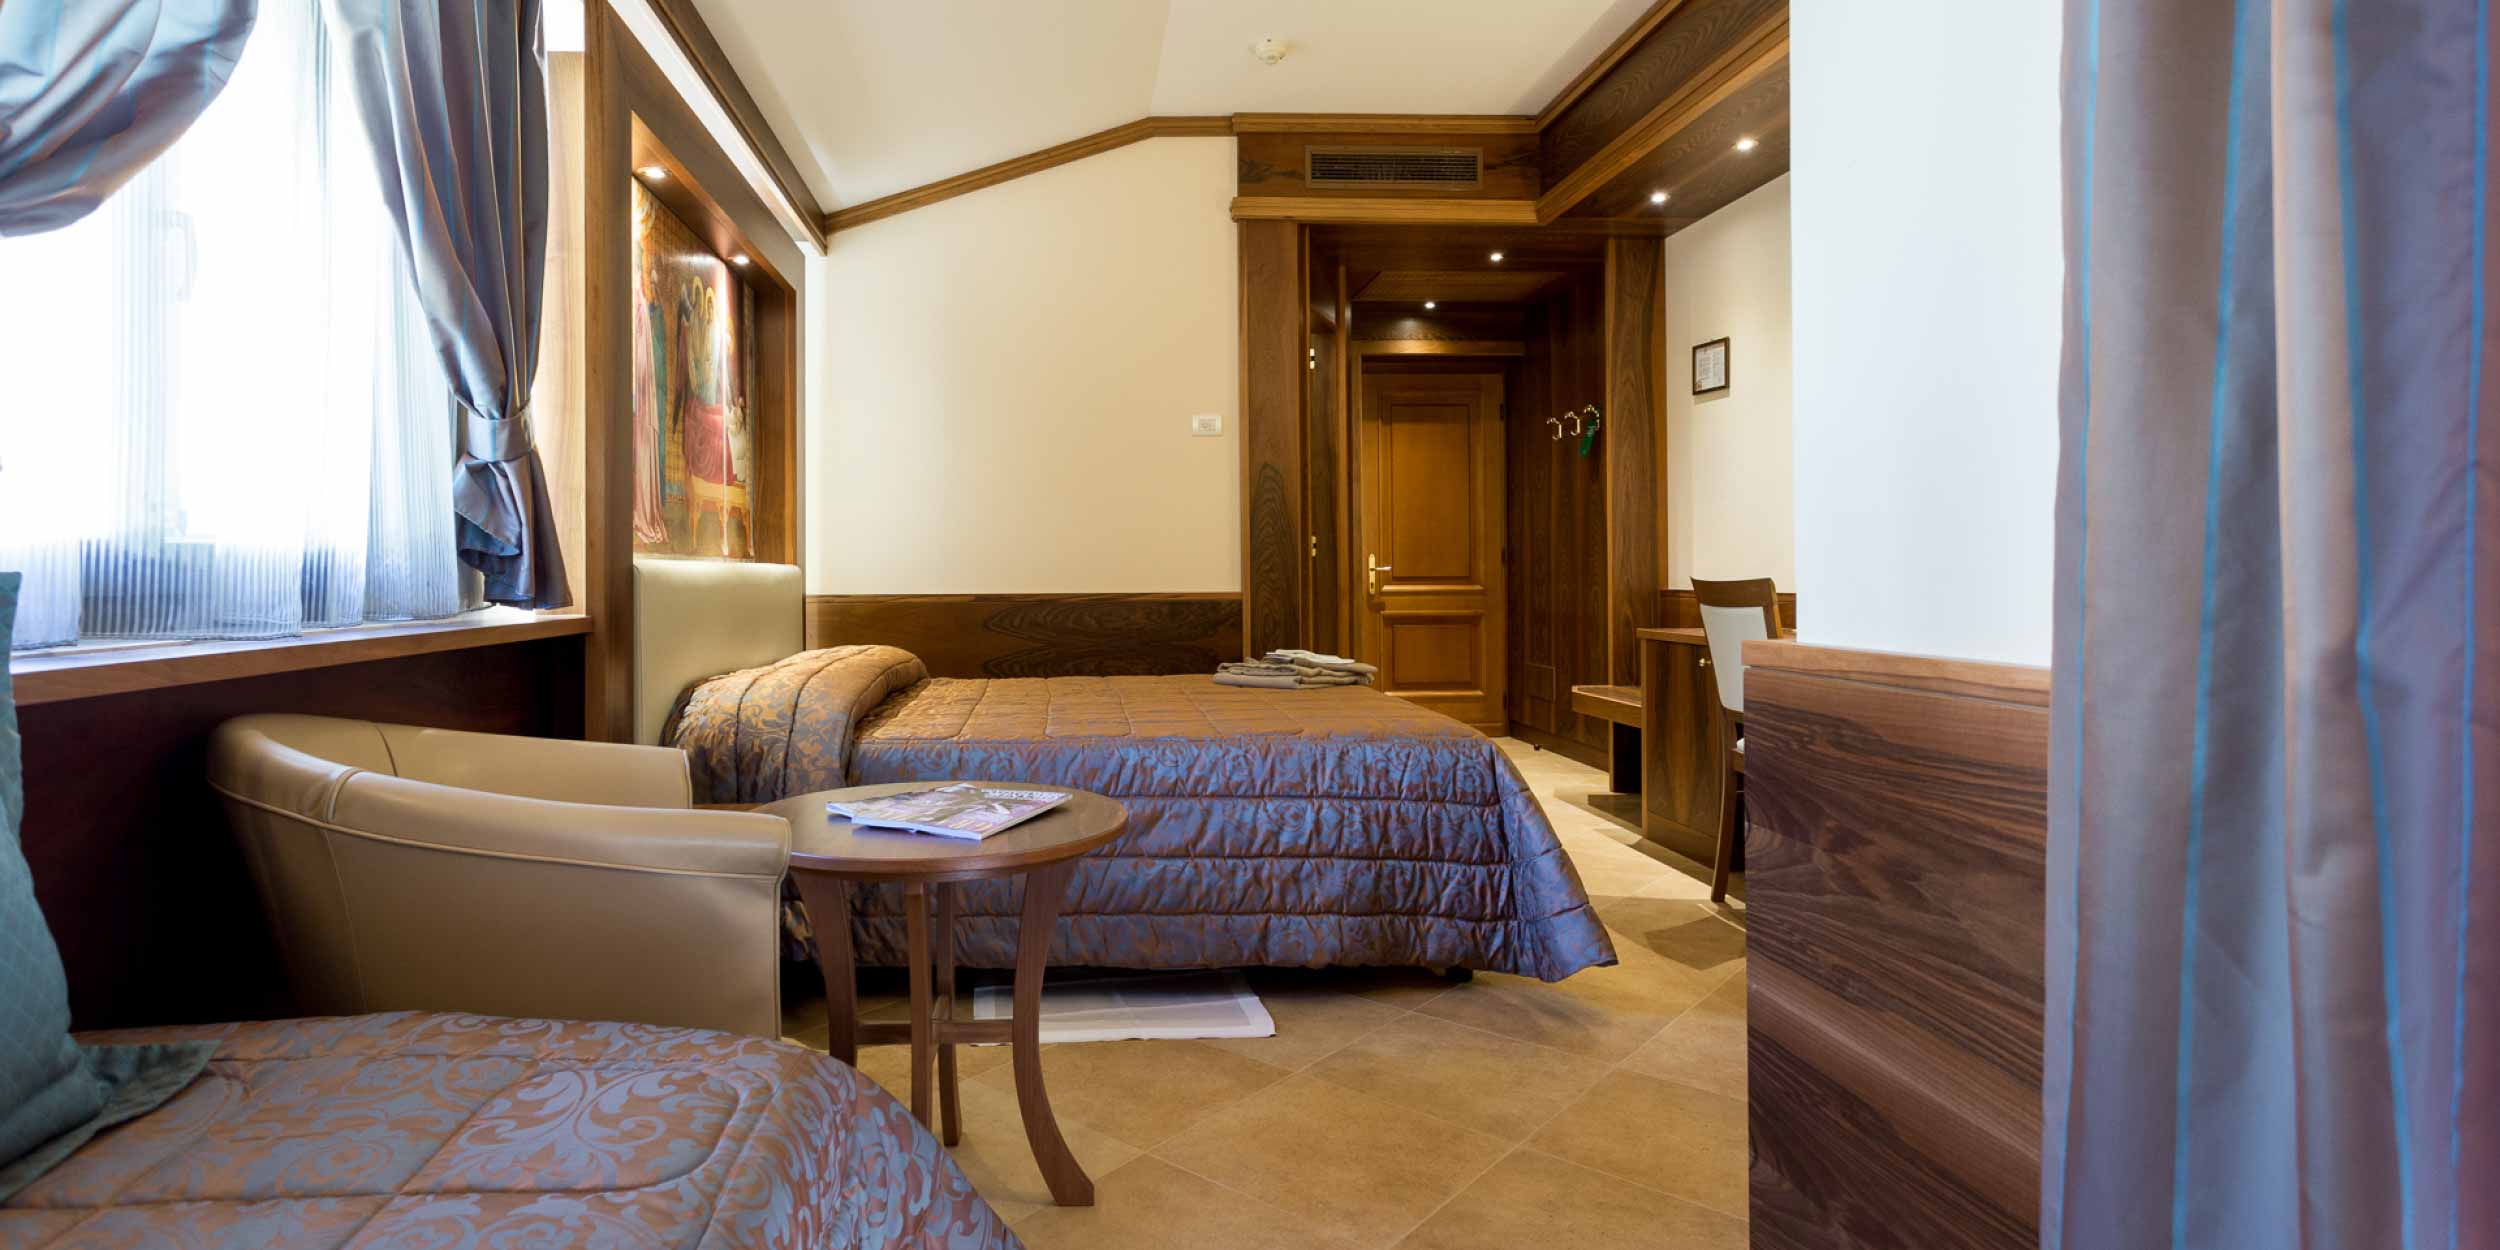 Camera superior | Hotel La Terrazza ad Assisi | Hotel tre stelle ad Assisi con ristorante, centro benessere, SPA e ristorante interno